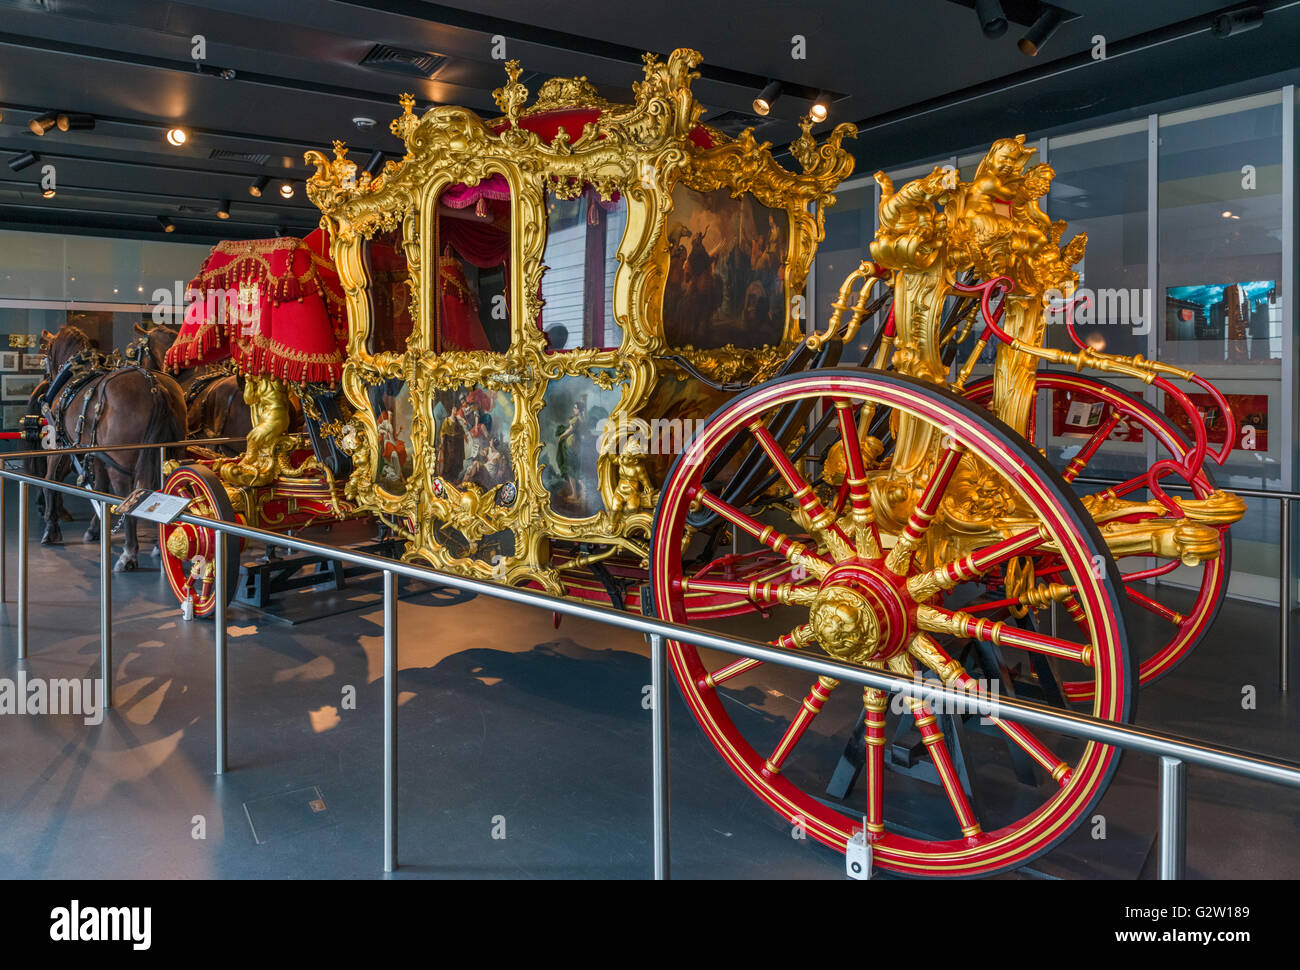 Le Seigneur de l'état du maire car, construite en 1757, exposée dans le Musée de Londres, London, UK Banque D'Images